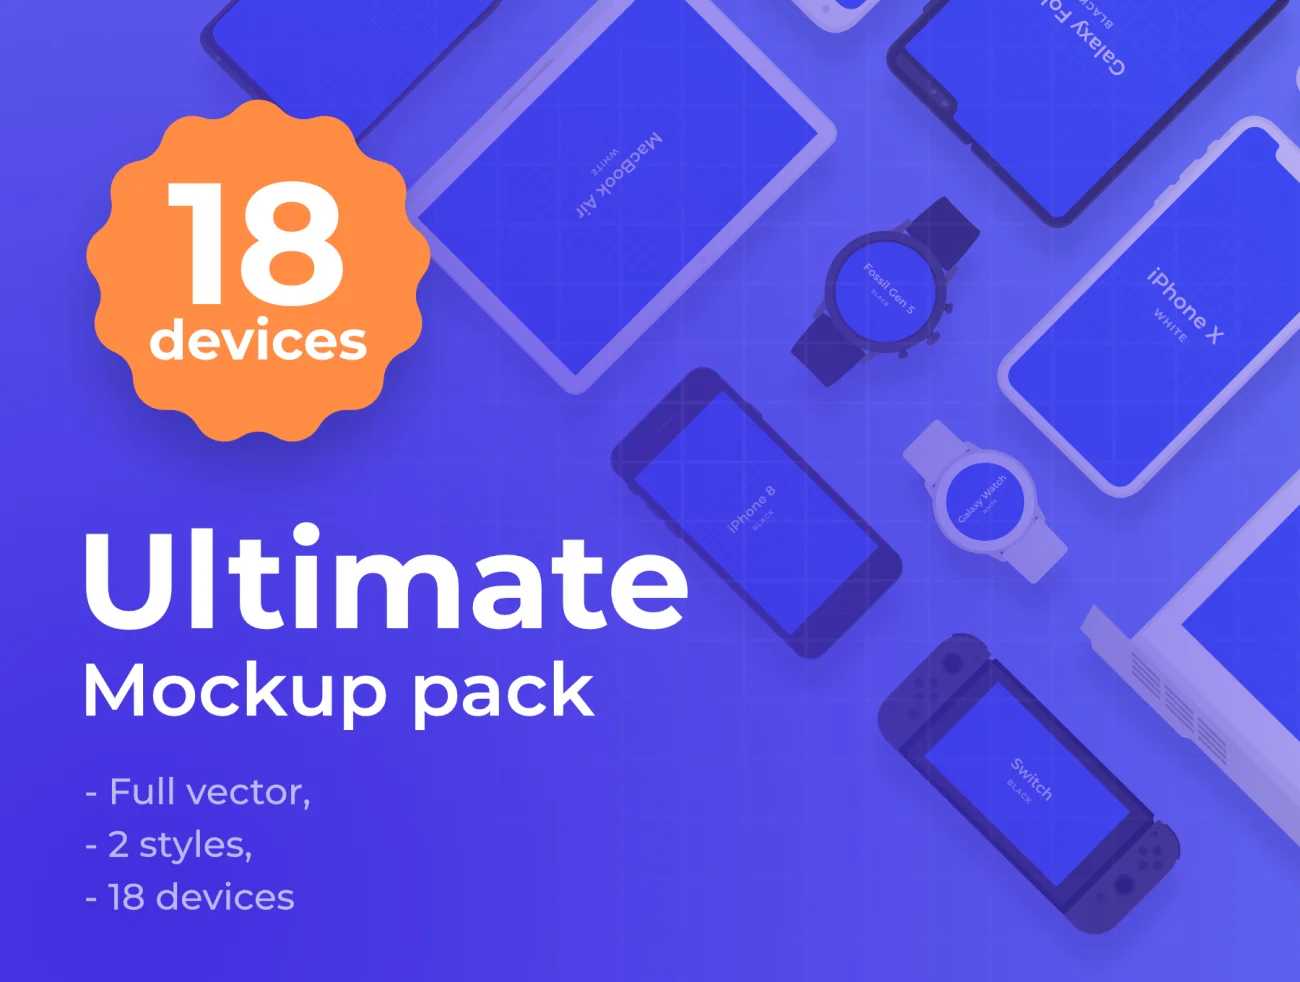 Ultimate mockup pack 18种设备终极实物虚拟模型包-产品展示、创意展示、手机模型、样机、简约样机、苹果设备-到位啦UI